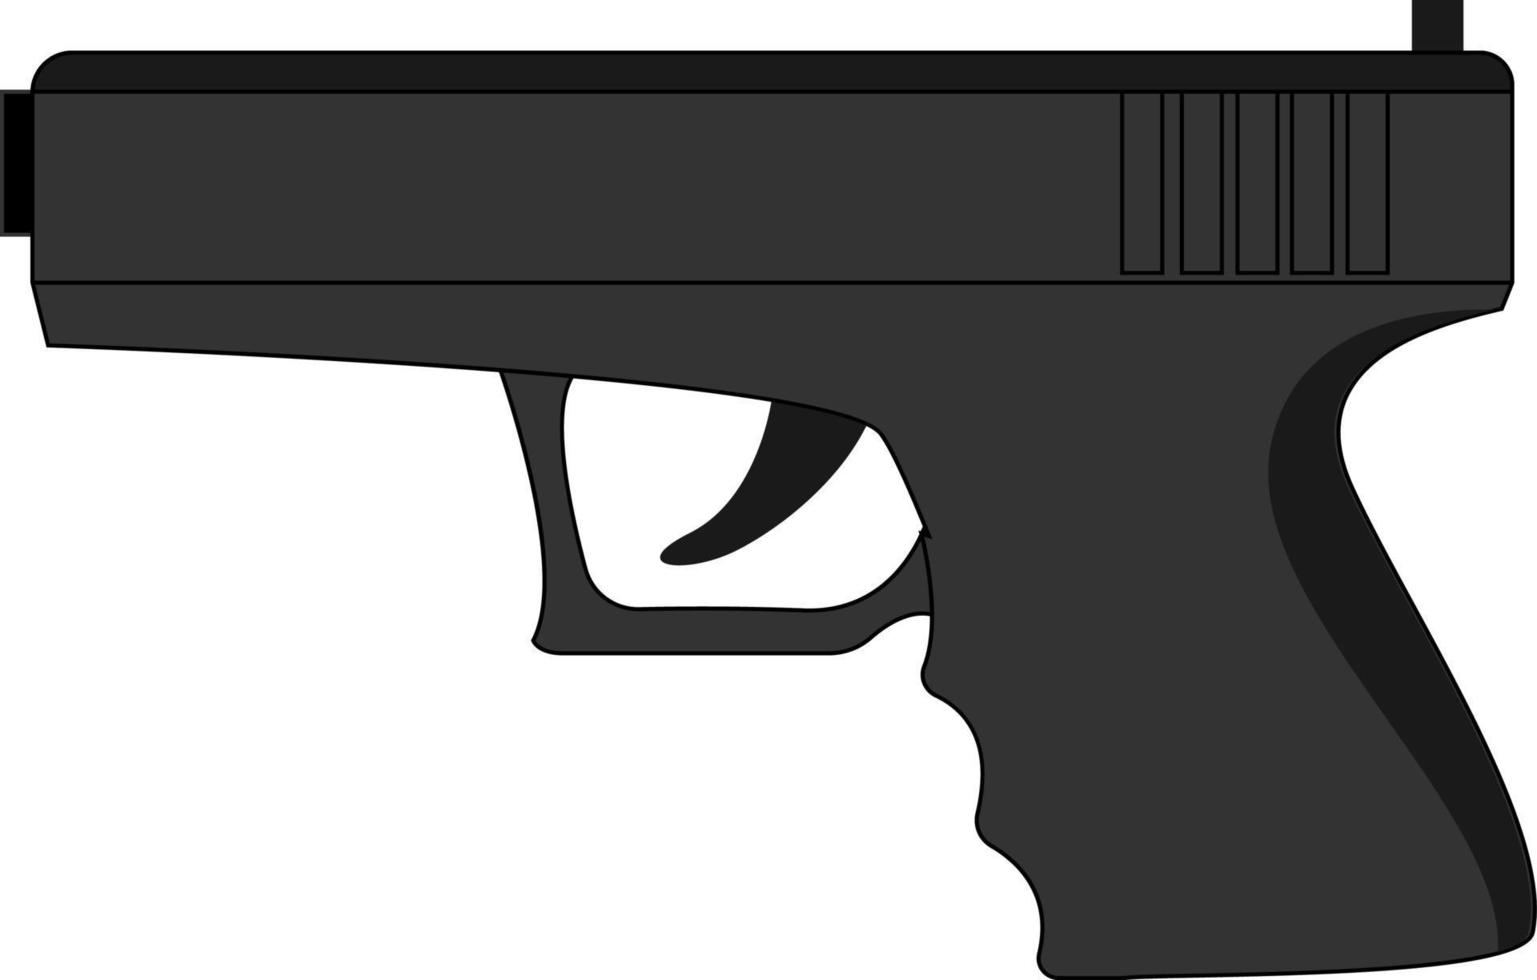 pistola glock, ilustração, vetor em fundo branco.